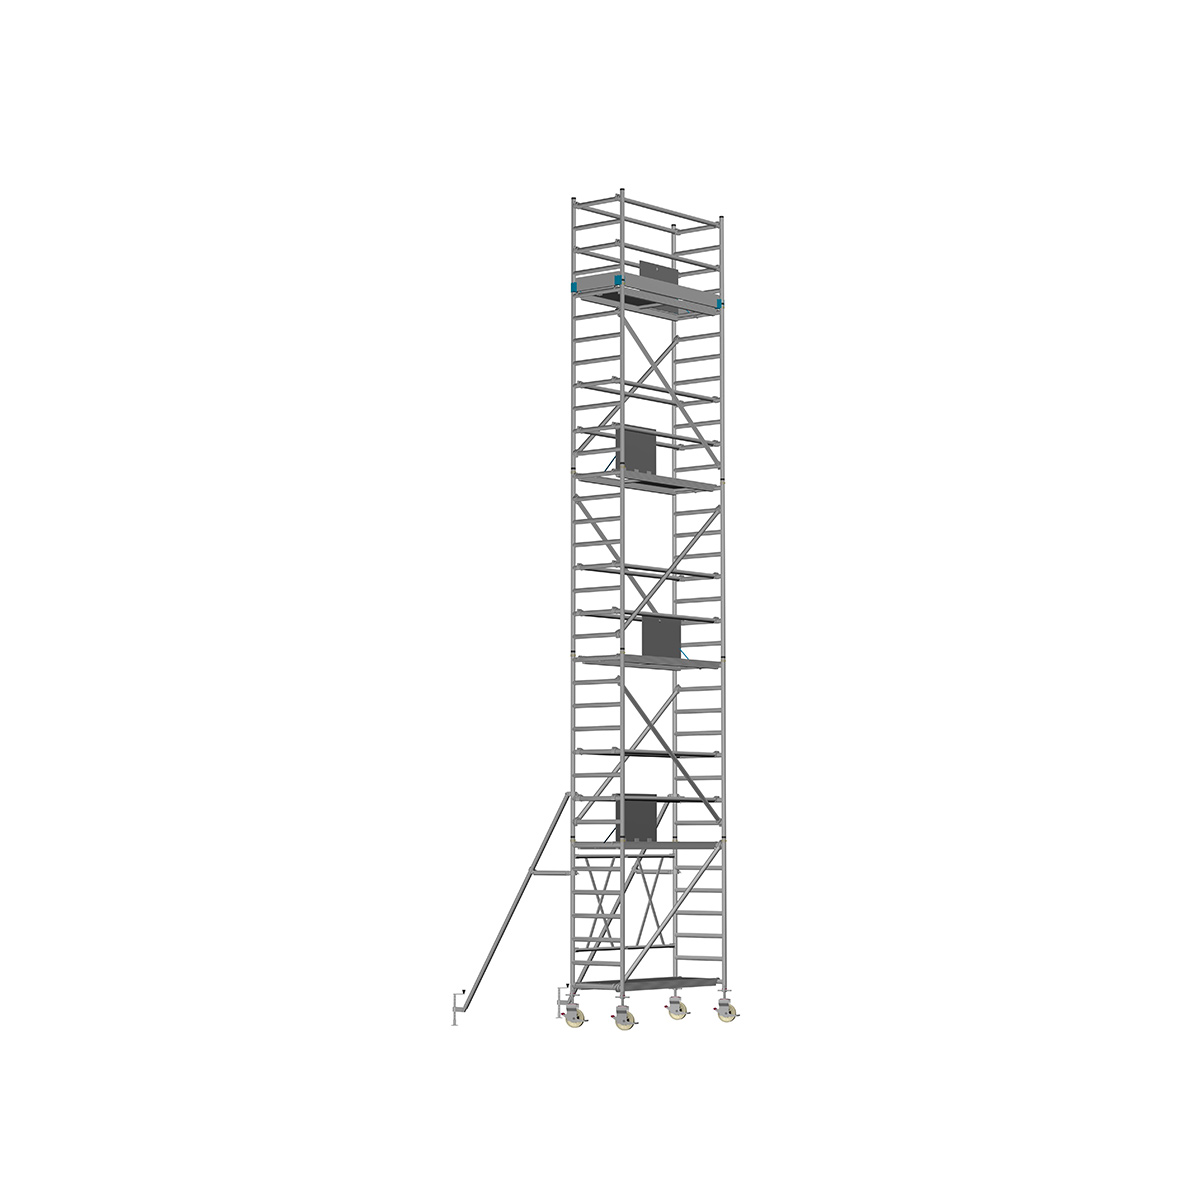 Chiemsee 1 SPEZIAL - Länge: 1,83 m - Breite: 0,74 m, Standhöhe 1,00 m